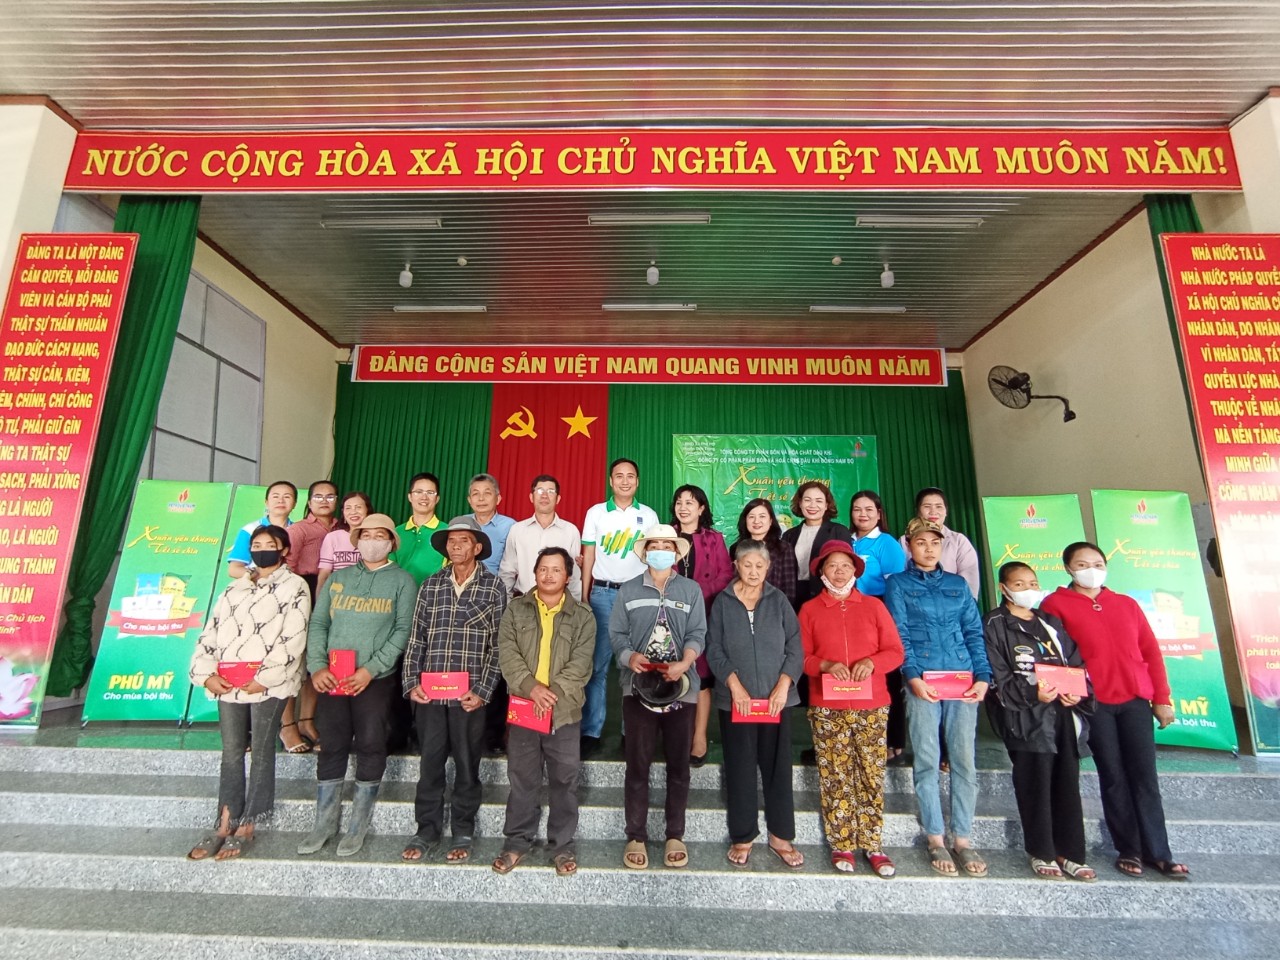 
PVFCCo tổ chức chương trình Tết vì người nghèo tại 100 xã phường cả nước - Ảnh 6.